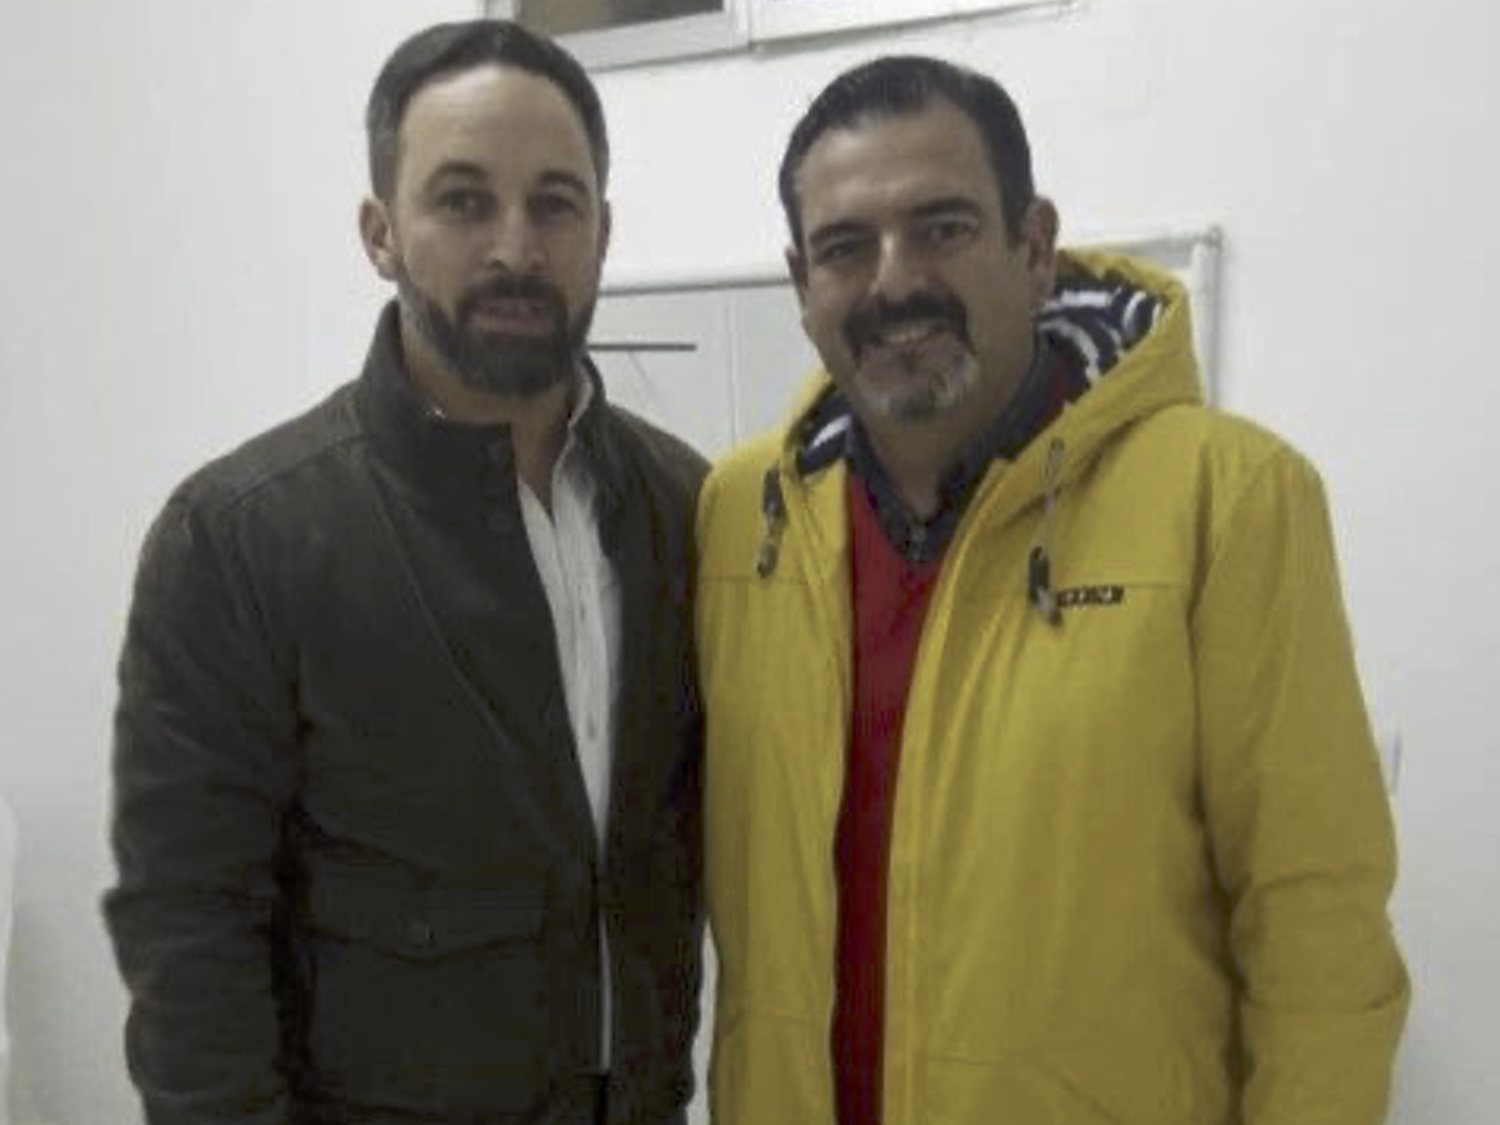 Un concejal de VOX amenaza de muerte a Pablo Iglesias: "Pronto no vas a seguir con vida"